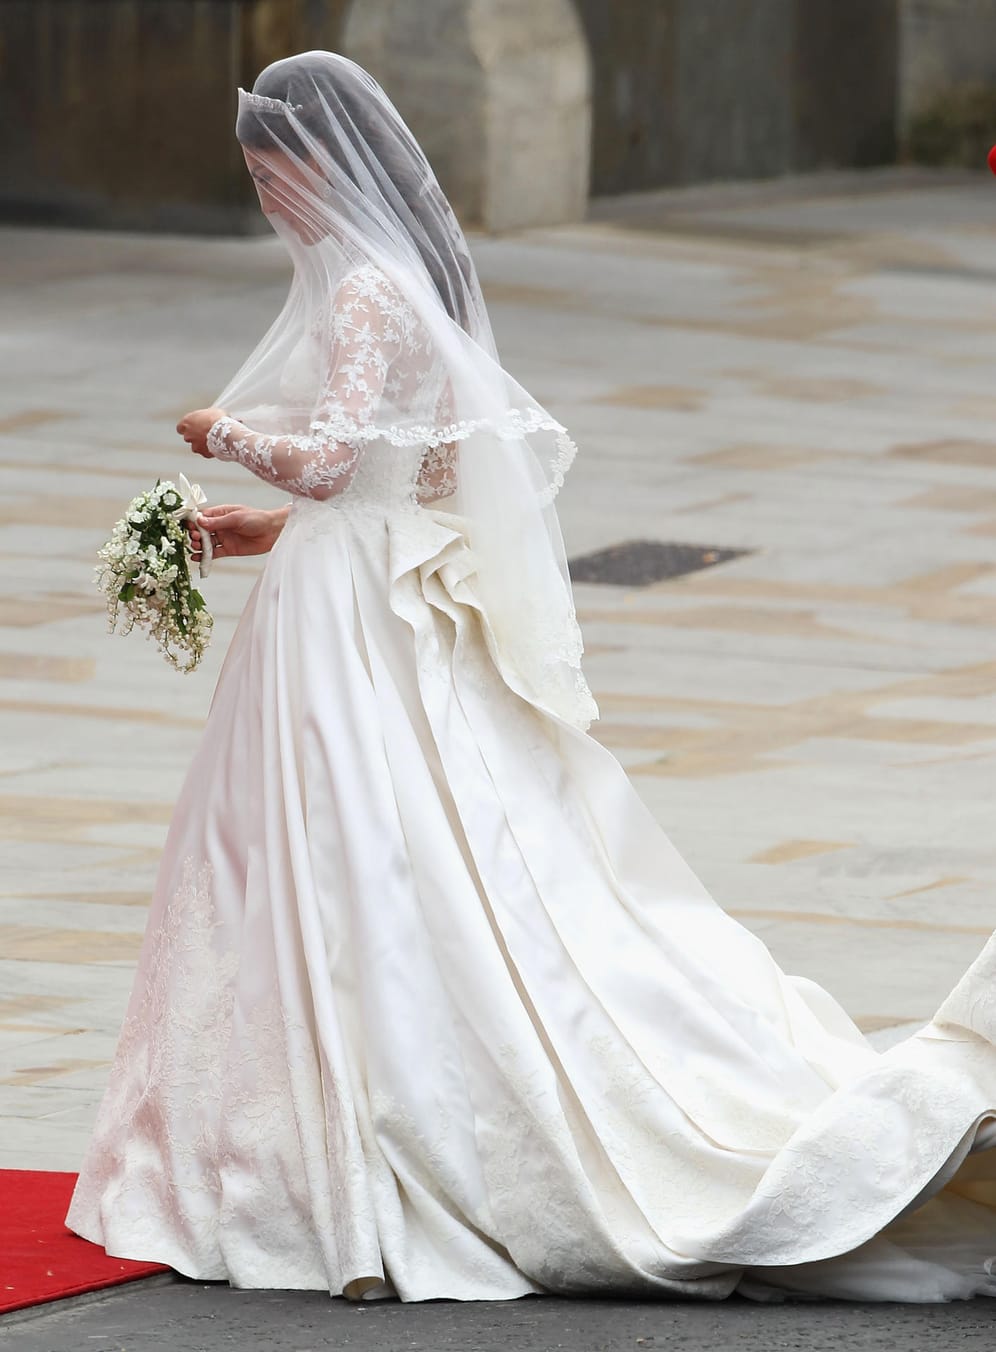 April 2011: Kate und William heiraten in der Westminster Abbey. Ihre Schwester Pippa ist Trauzeugin und trägt ihre Schleppe.